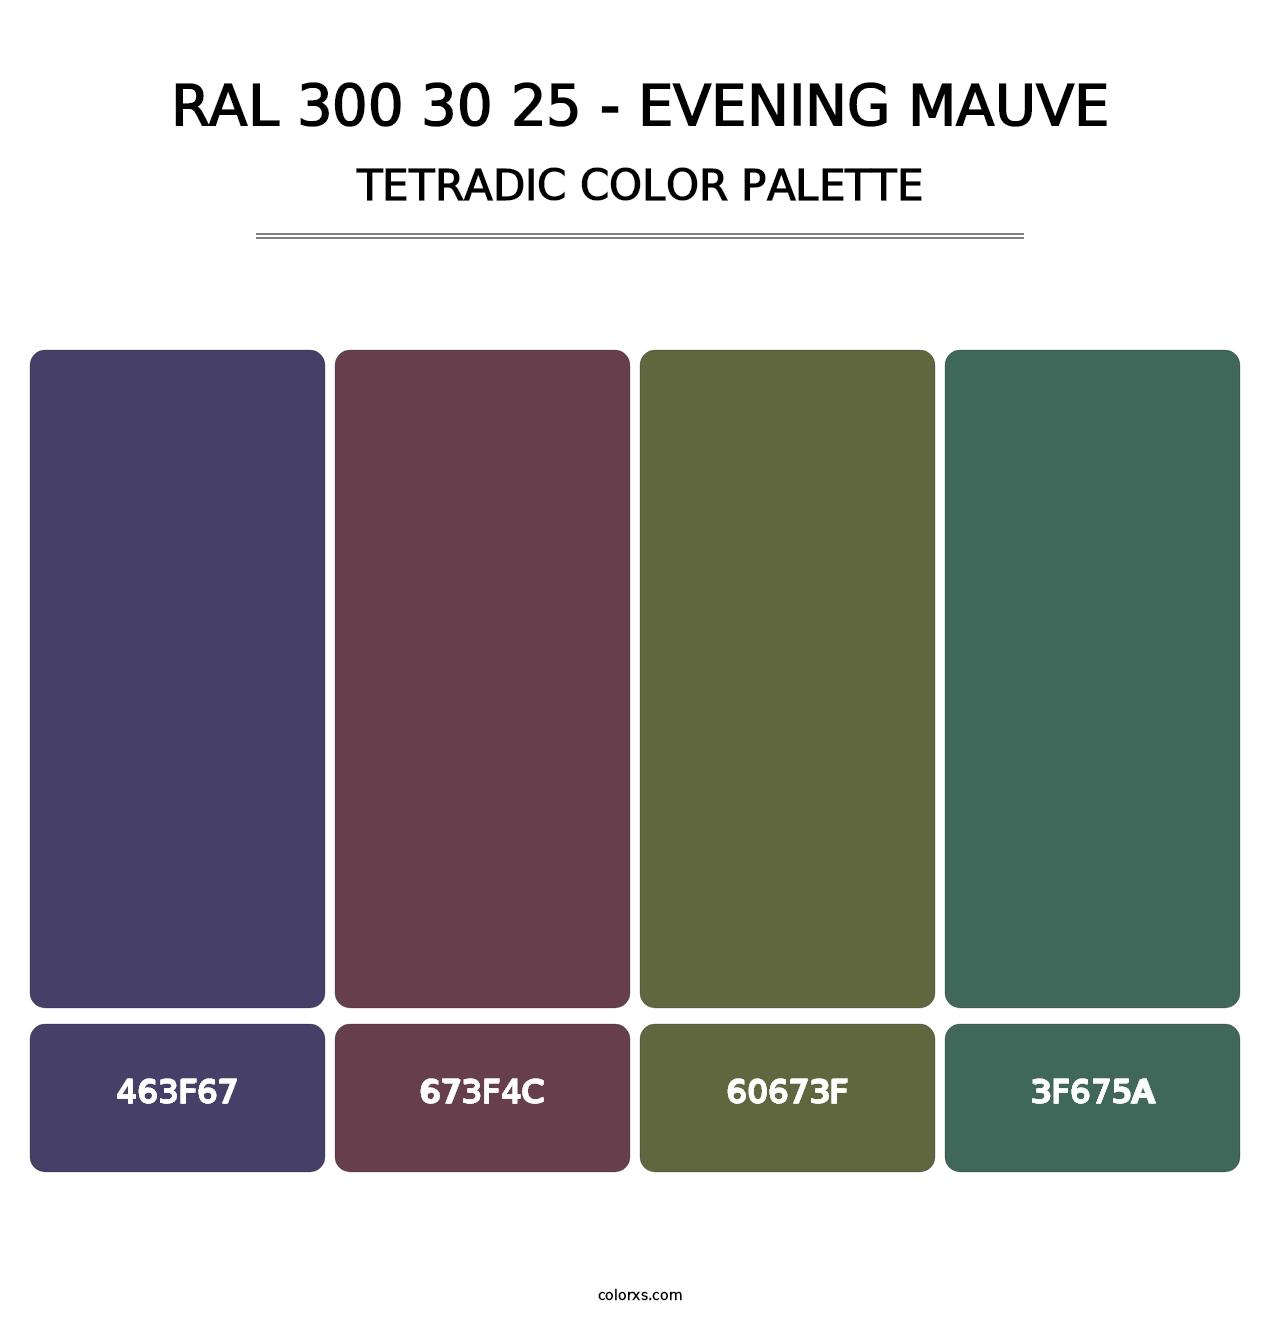 RAL 300 30 25 - Evening Mauve - Tetradic Color Palette